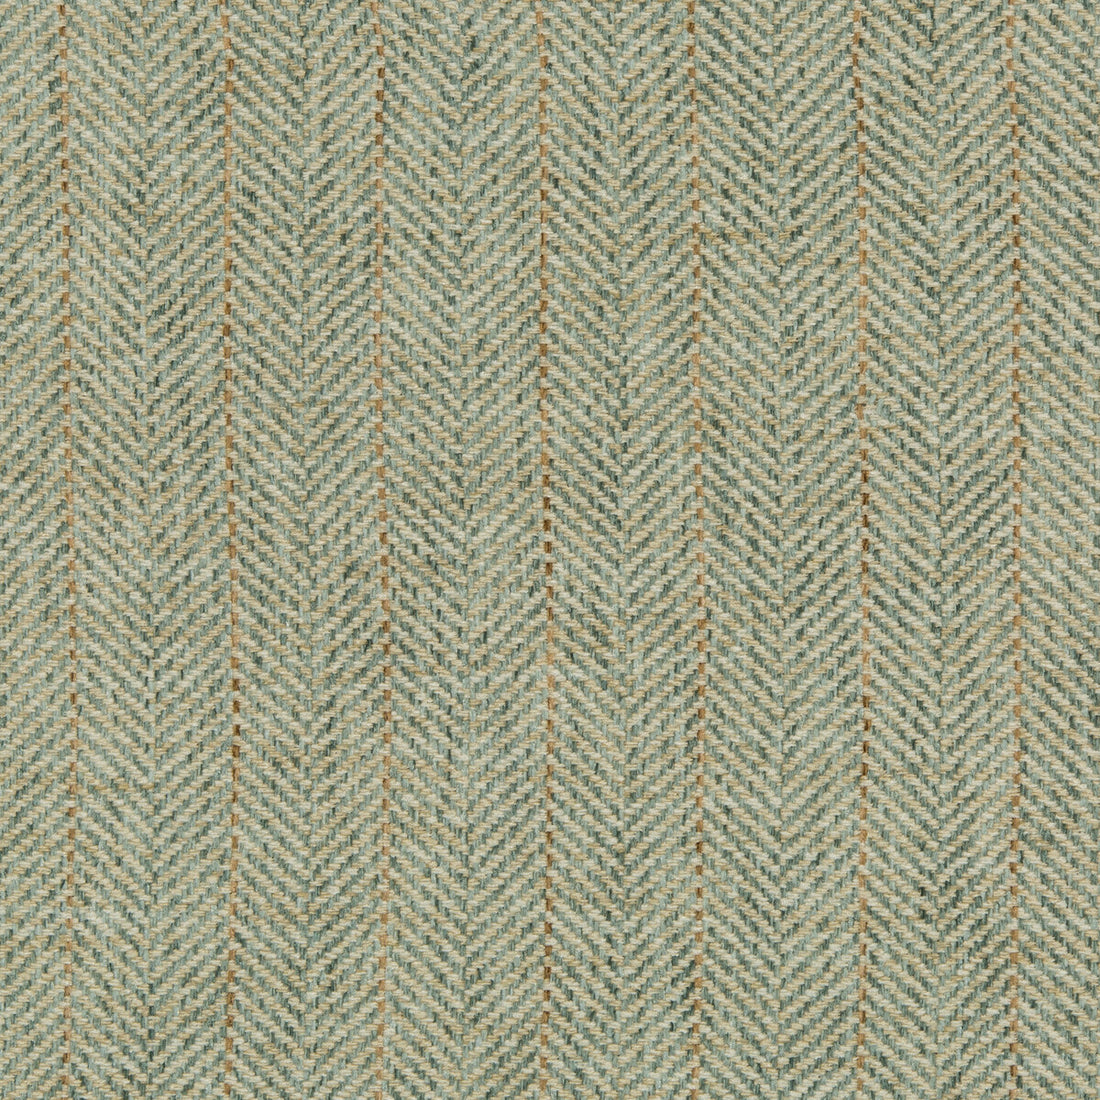 Kravet Basics fabric in 35776-323 color - pattern 35776.323.0 - by Kravet Basics